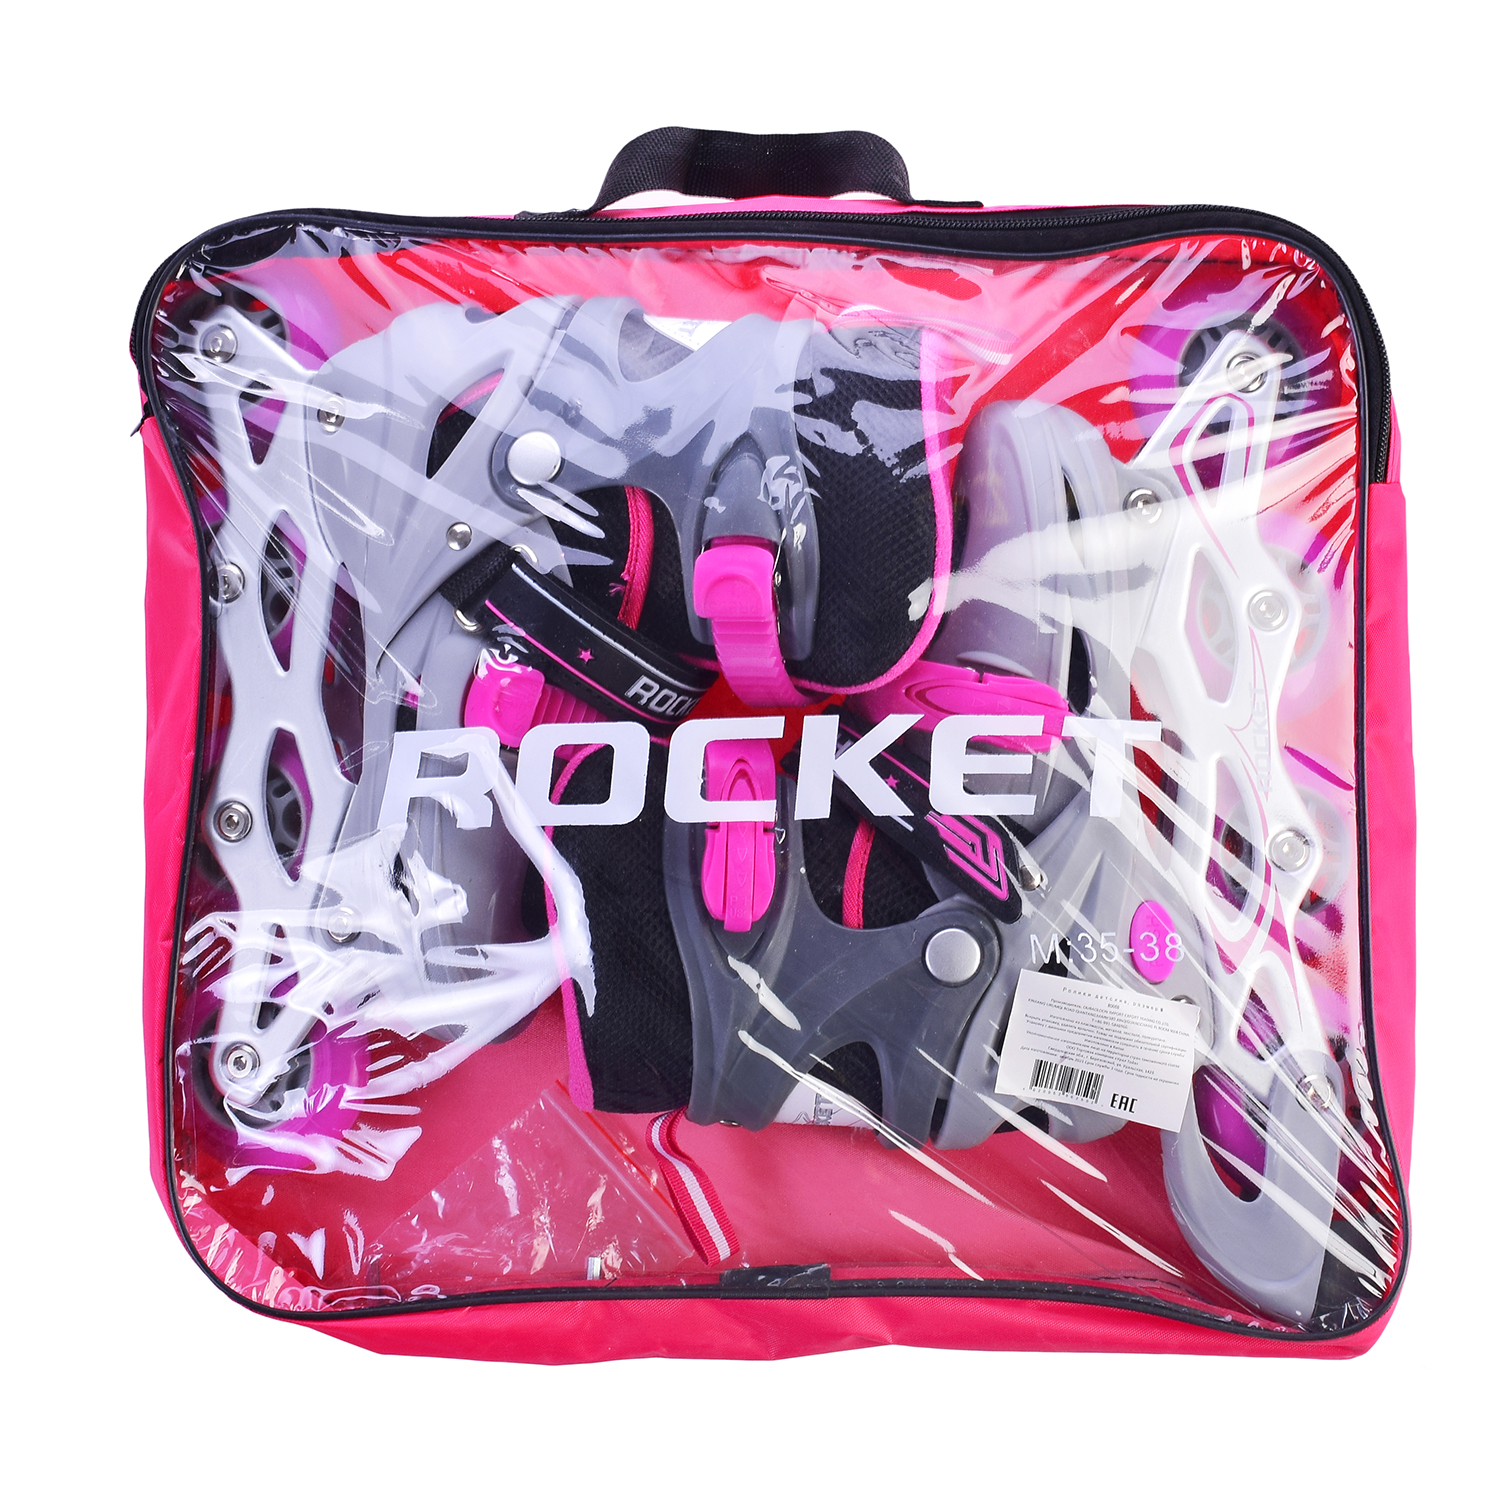 Ролики ROCKET Роликовые коньки раздвижные PU колёса со светом размер 32-35 розовые в сумке - фото 4